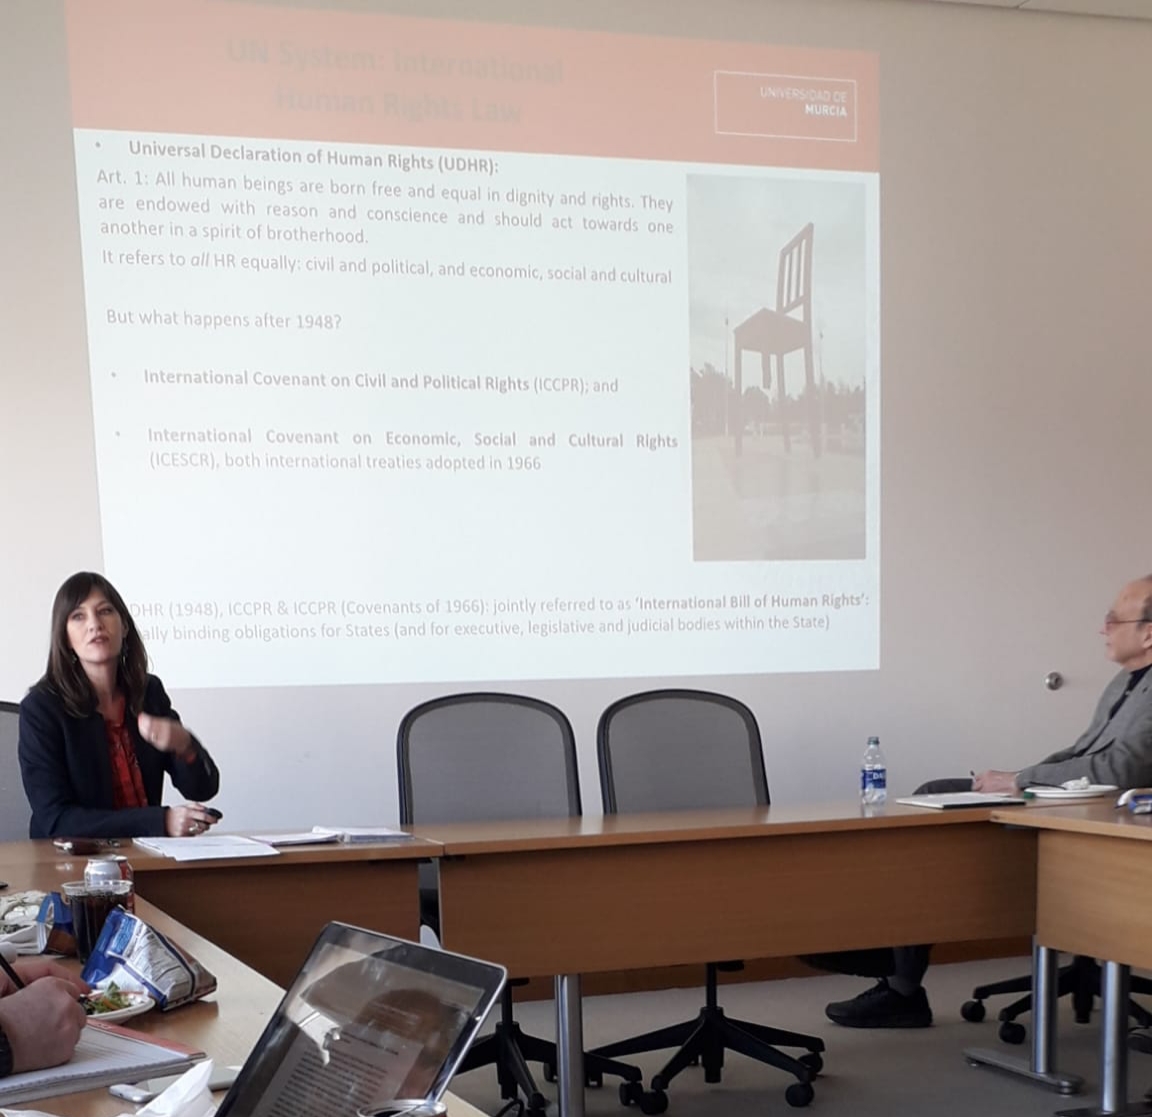 Profesora de Derecho Internacional Público de la Universidad de Murcia imparte una sesión en el Programa de Derechos Humanos de la Universidad de Harvard